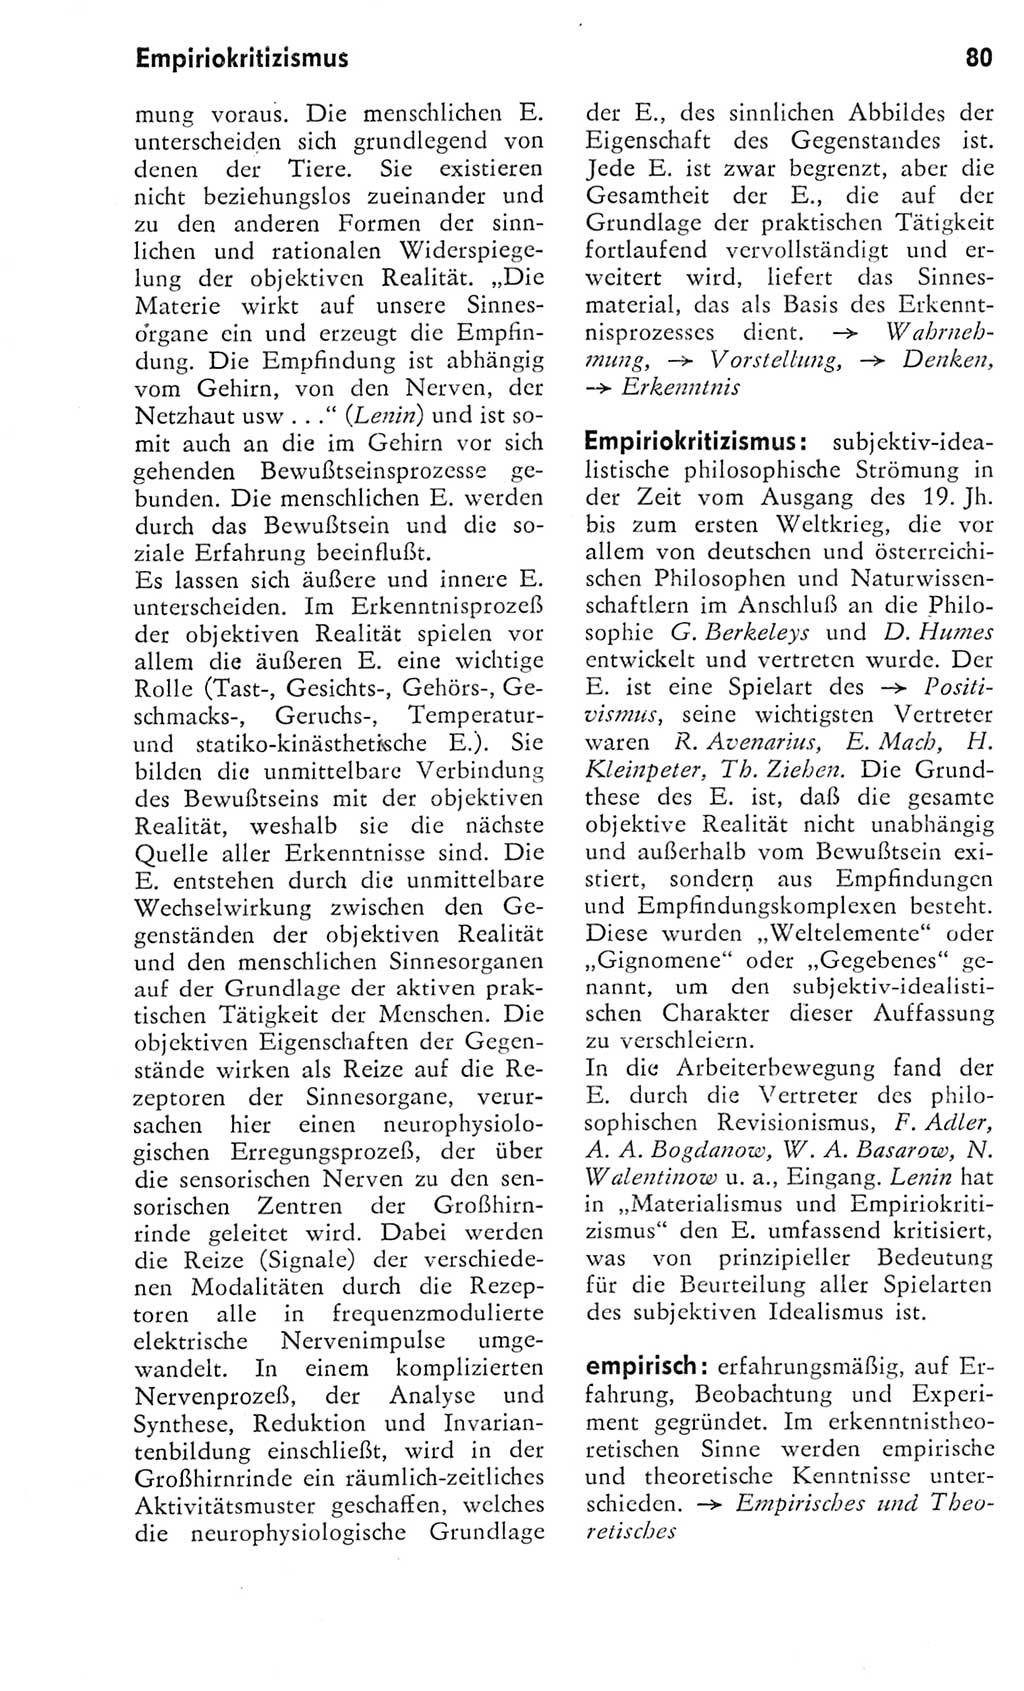 Kleines Wörterbuch der marxistisch-leninistischen Philosophie [Deutsche Demokratische Republik (DDR)] 1975, Seite 80 (Kl. Wb. ML Phil. DDR 1975, S. 80)